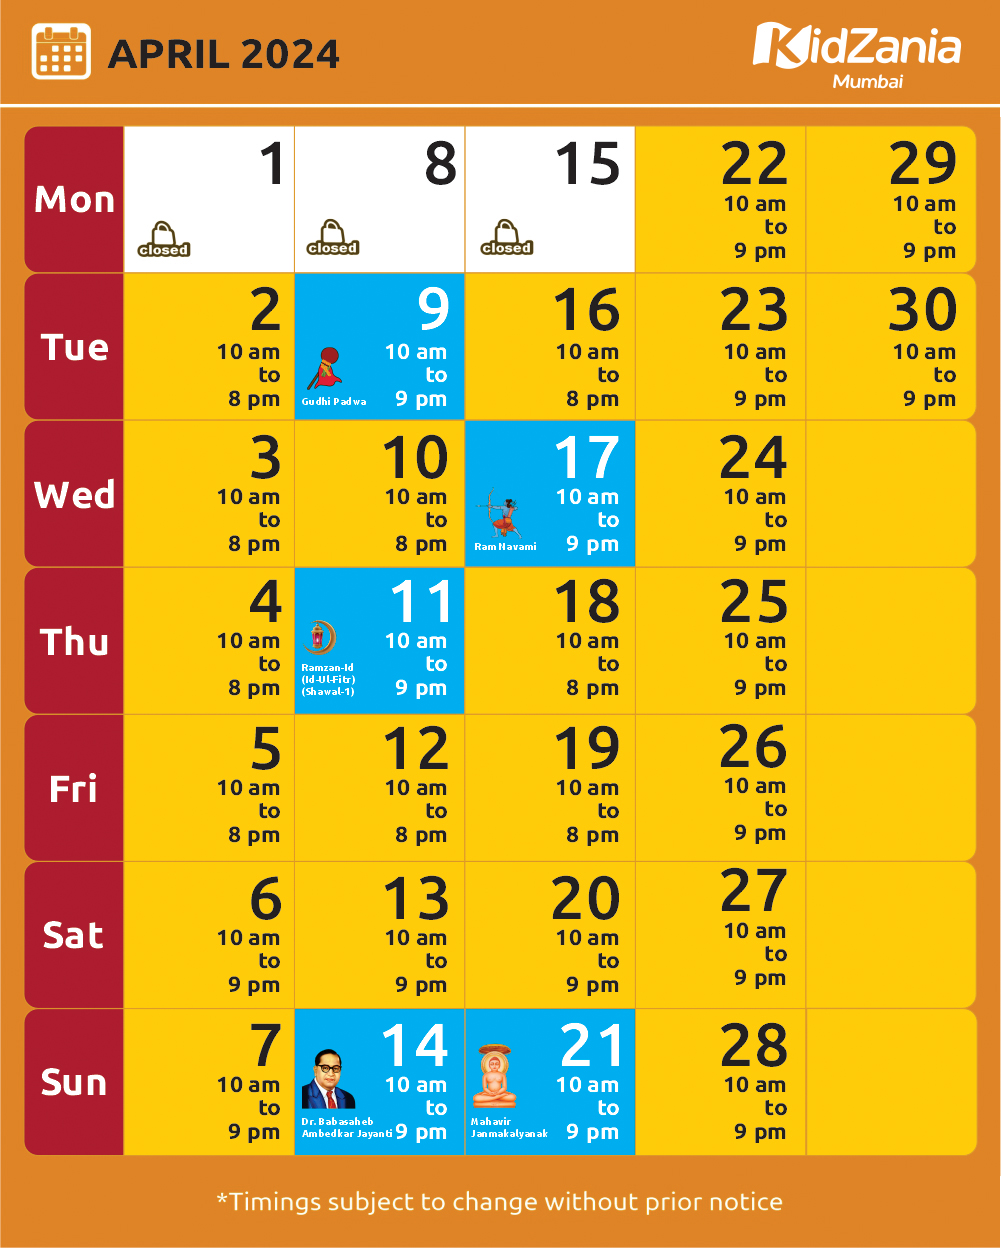 KidZania Mumbai Calendar Apr-24